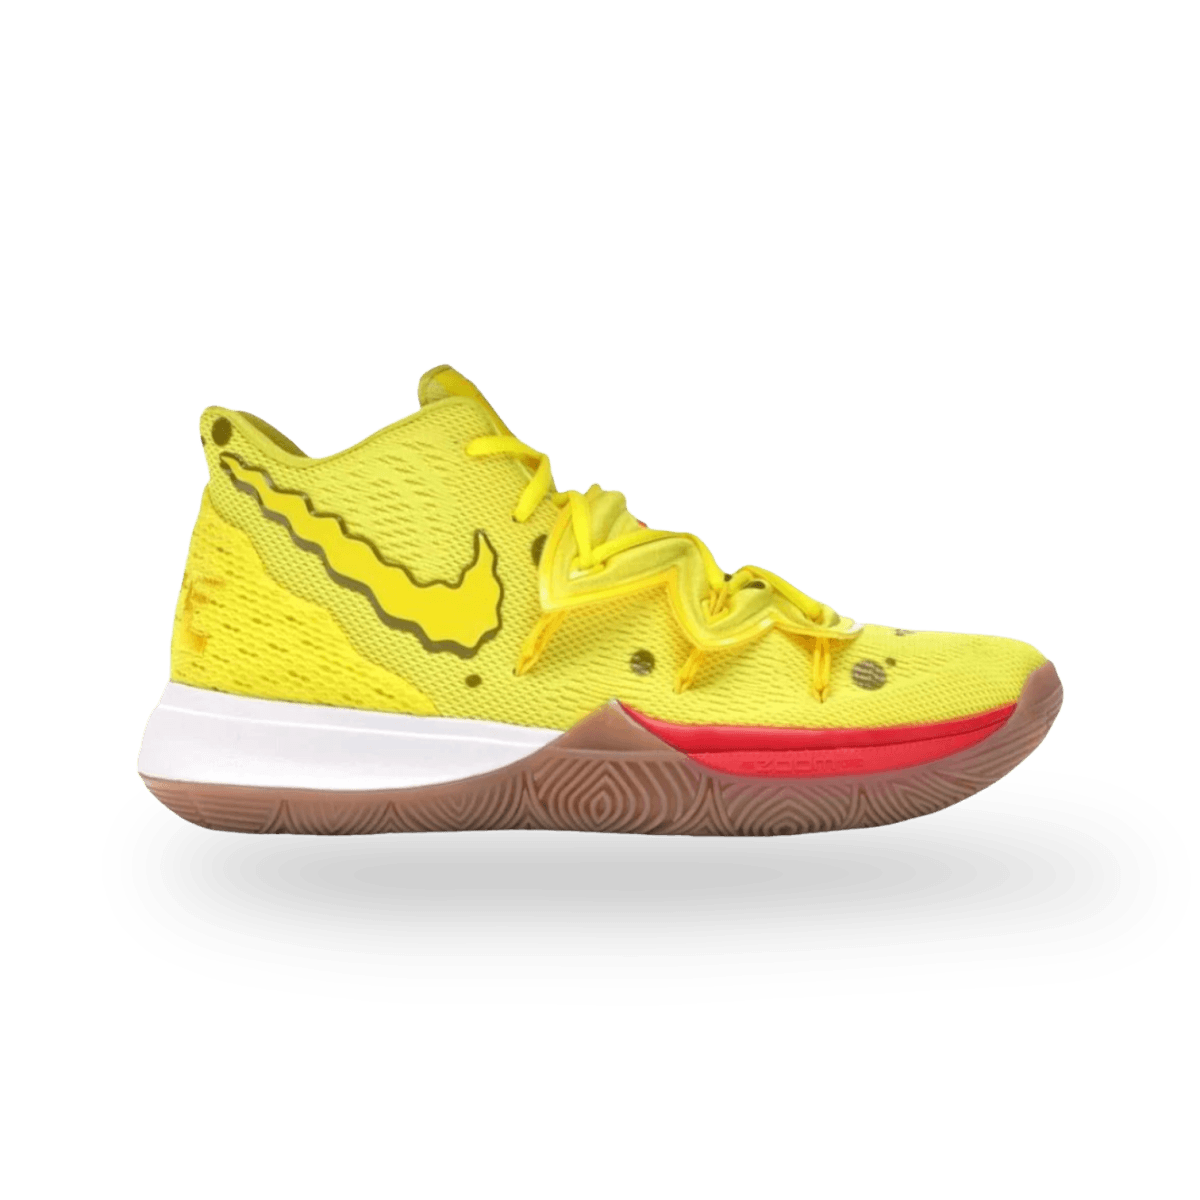 Kyrie 5 Spongebob Squarepants - Mid Sneaker - Nike - Jawns on Fire - sneakers